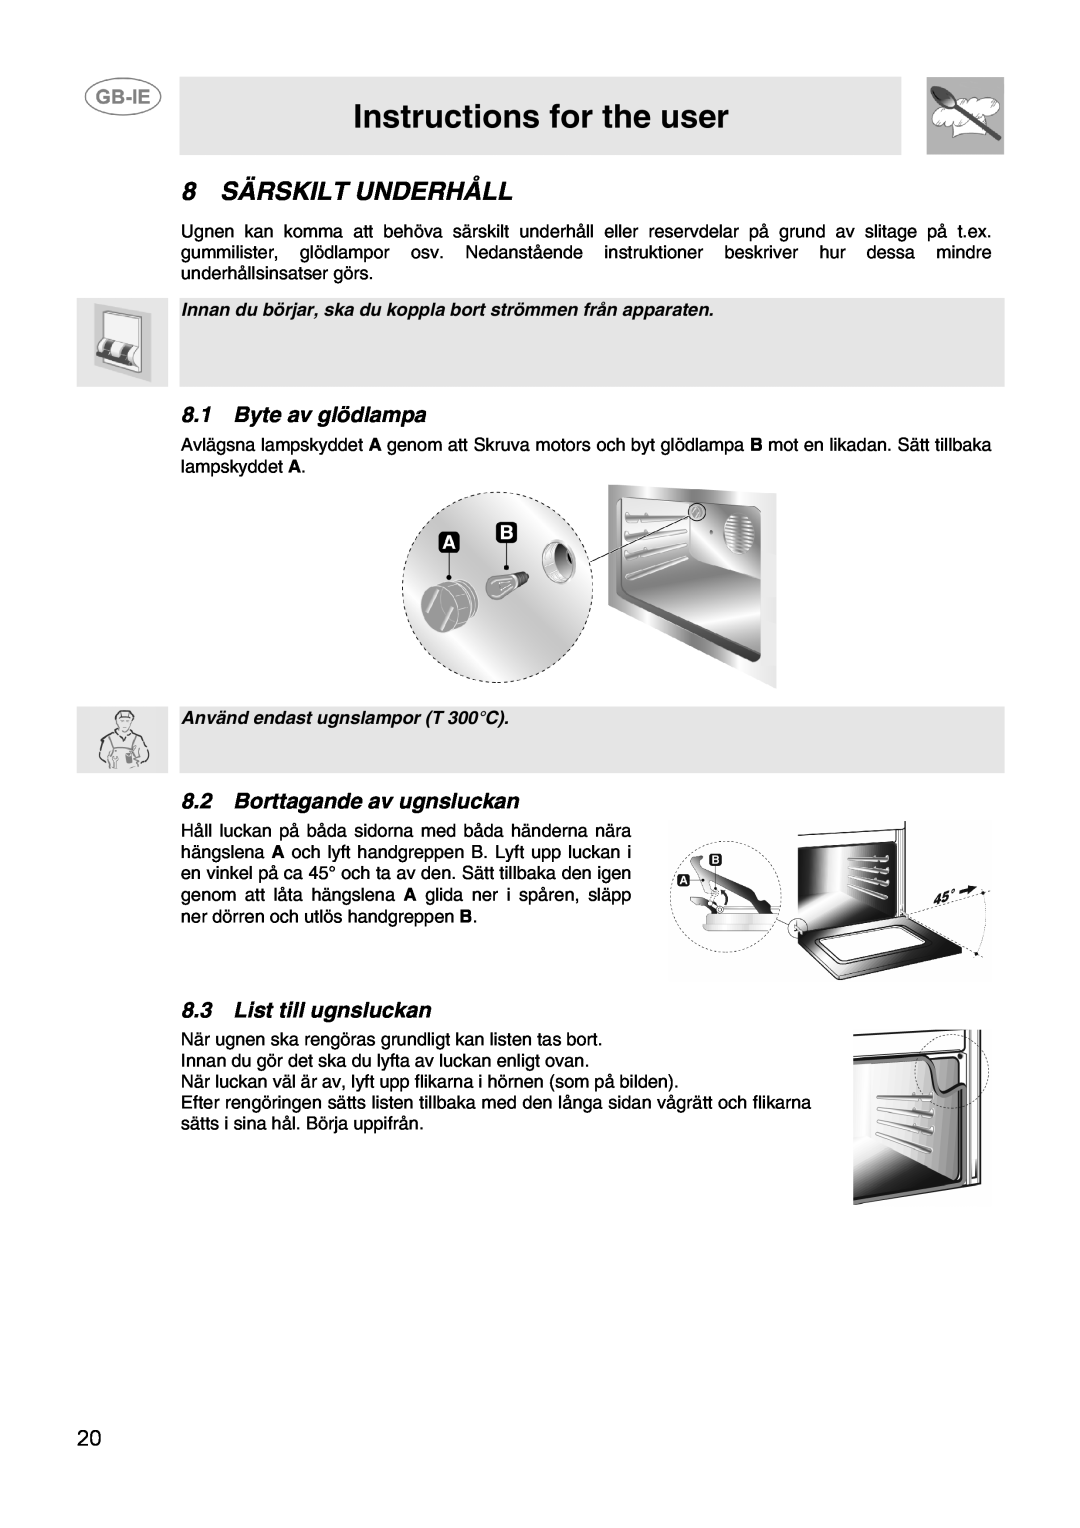 Smeg CIX64MS-5 manual 8 SÄRSKILT UNDERHÅLL, Byte av glödlampa, Borttagande av ugnsluckan, List till ugnsluckan 